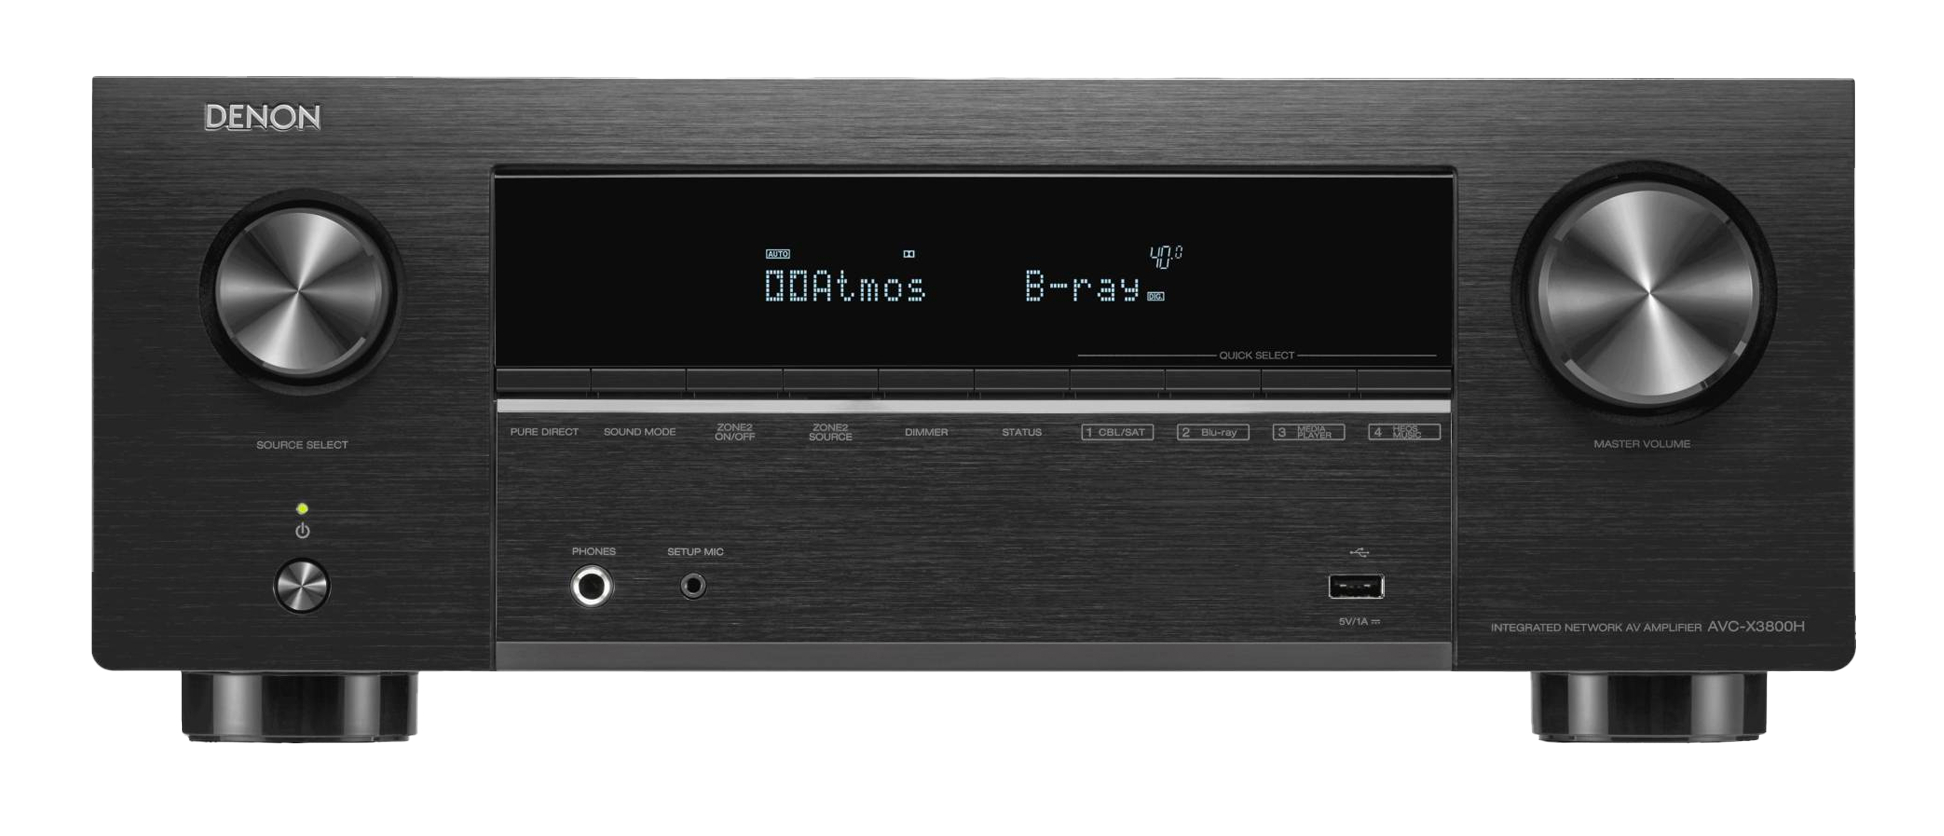 AVC-X3800H 8K video- en 3D-audiobeleving met een 9.4-kanaals receiver